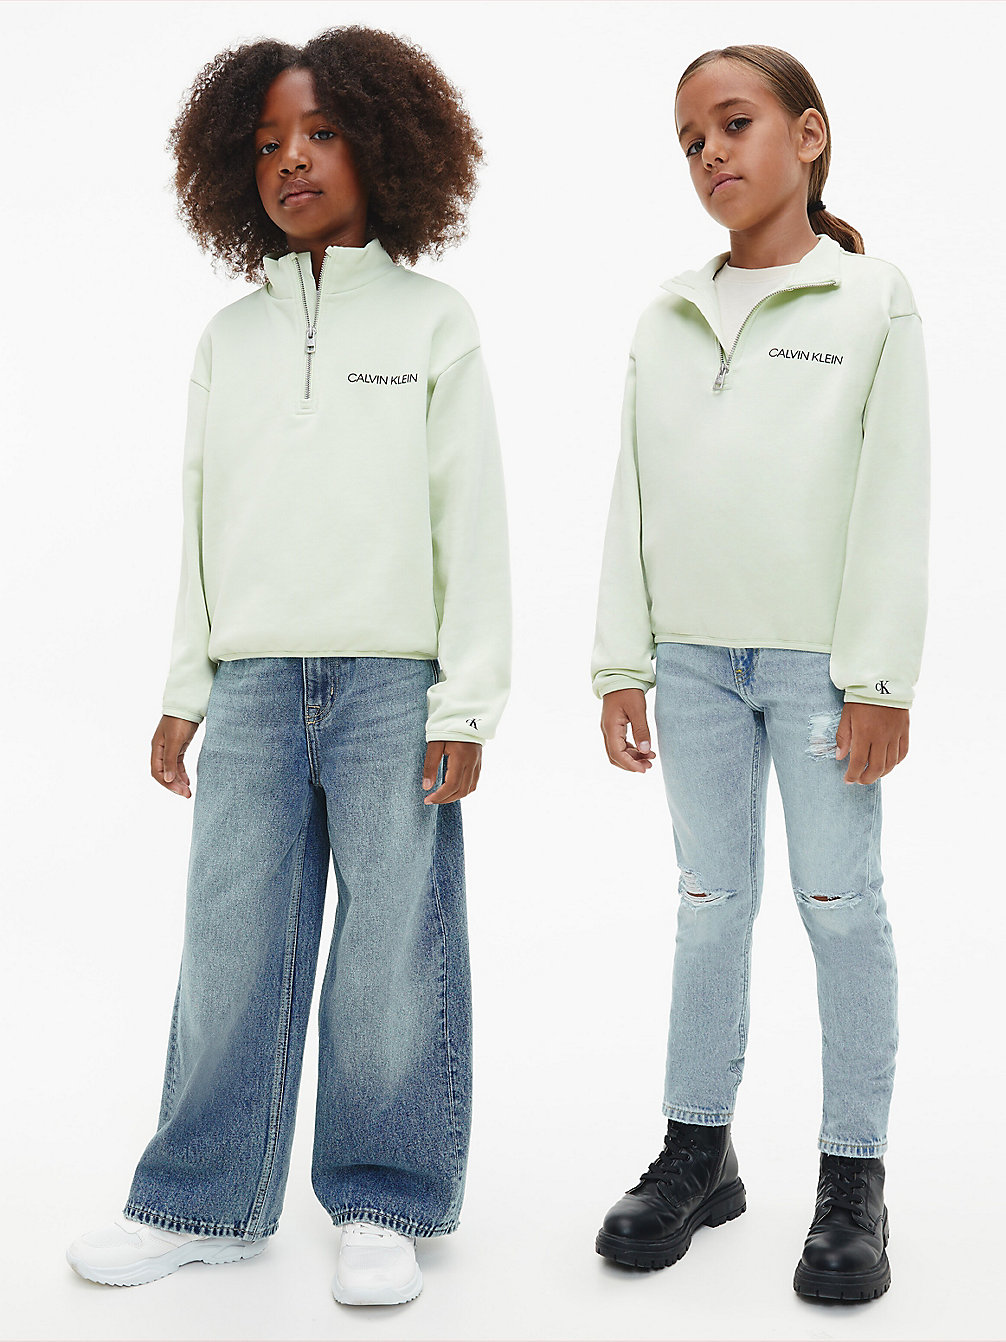 SEAFOAM GREEN > Lässiges Unisex Sweatshirt Mit Reißverschlusskragen > undefined kids unisex - Calvin Klein